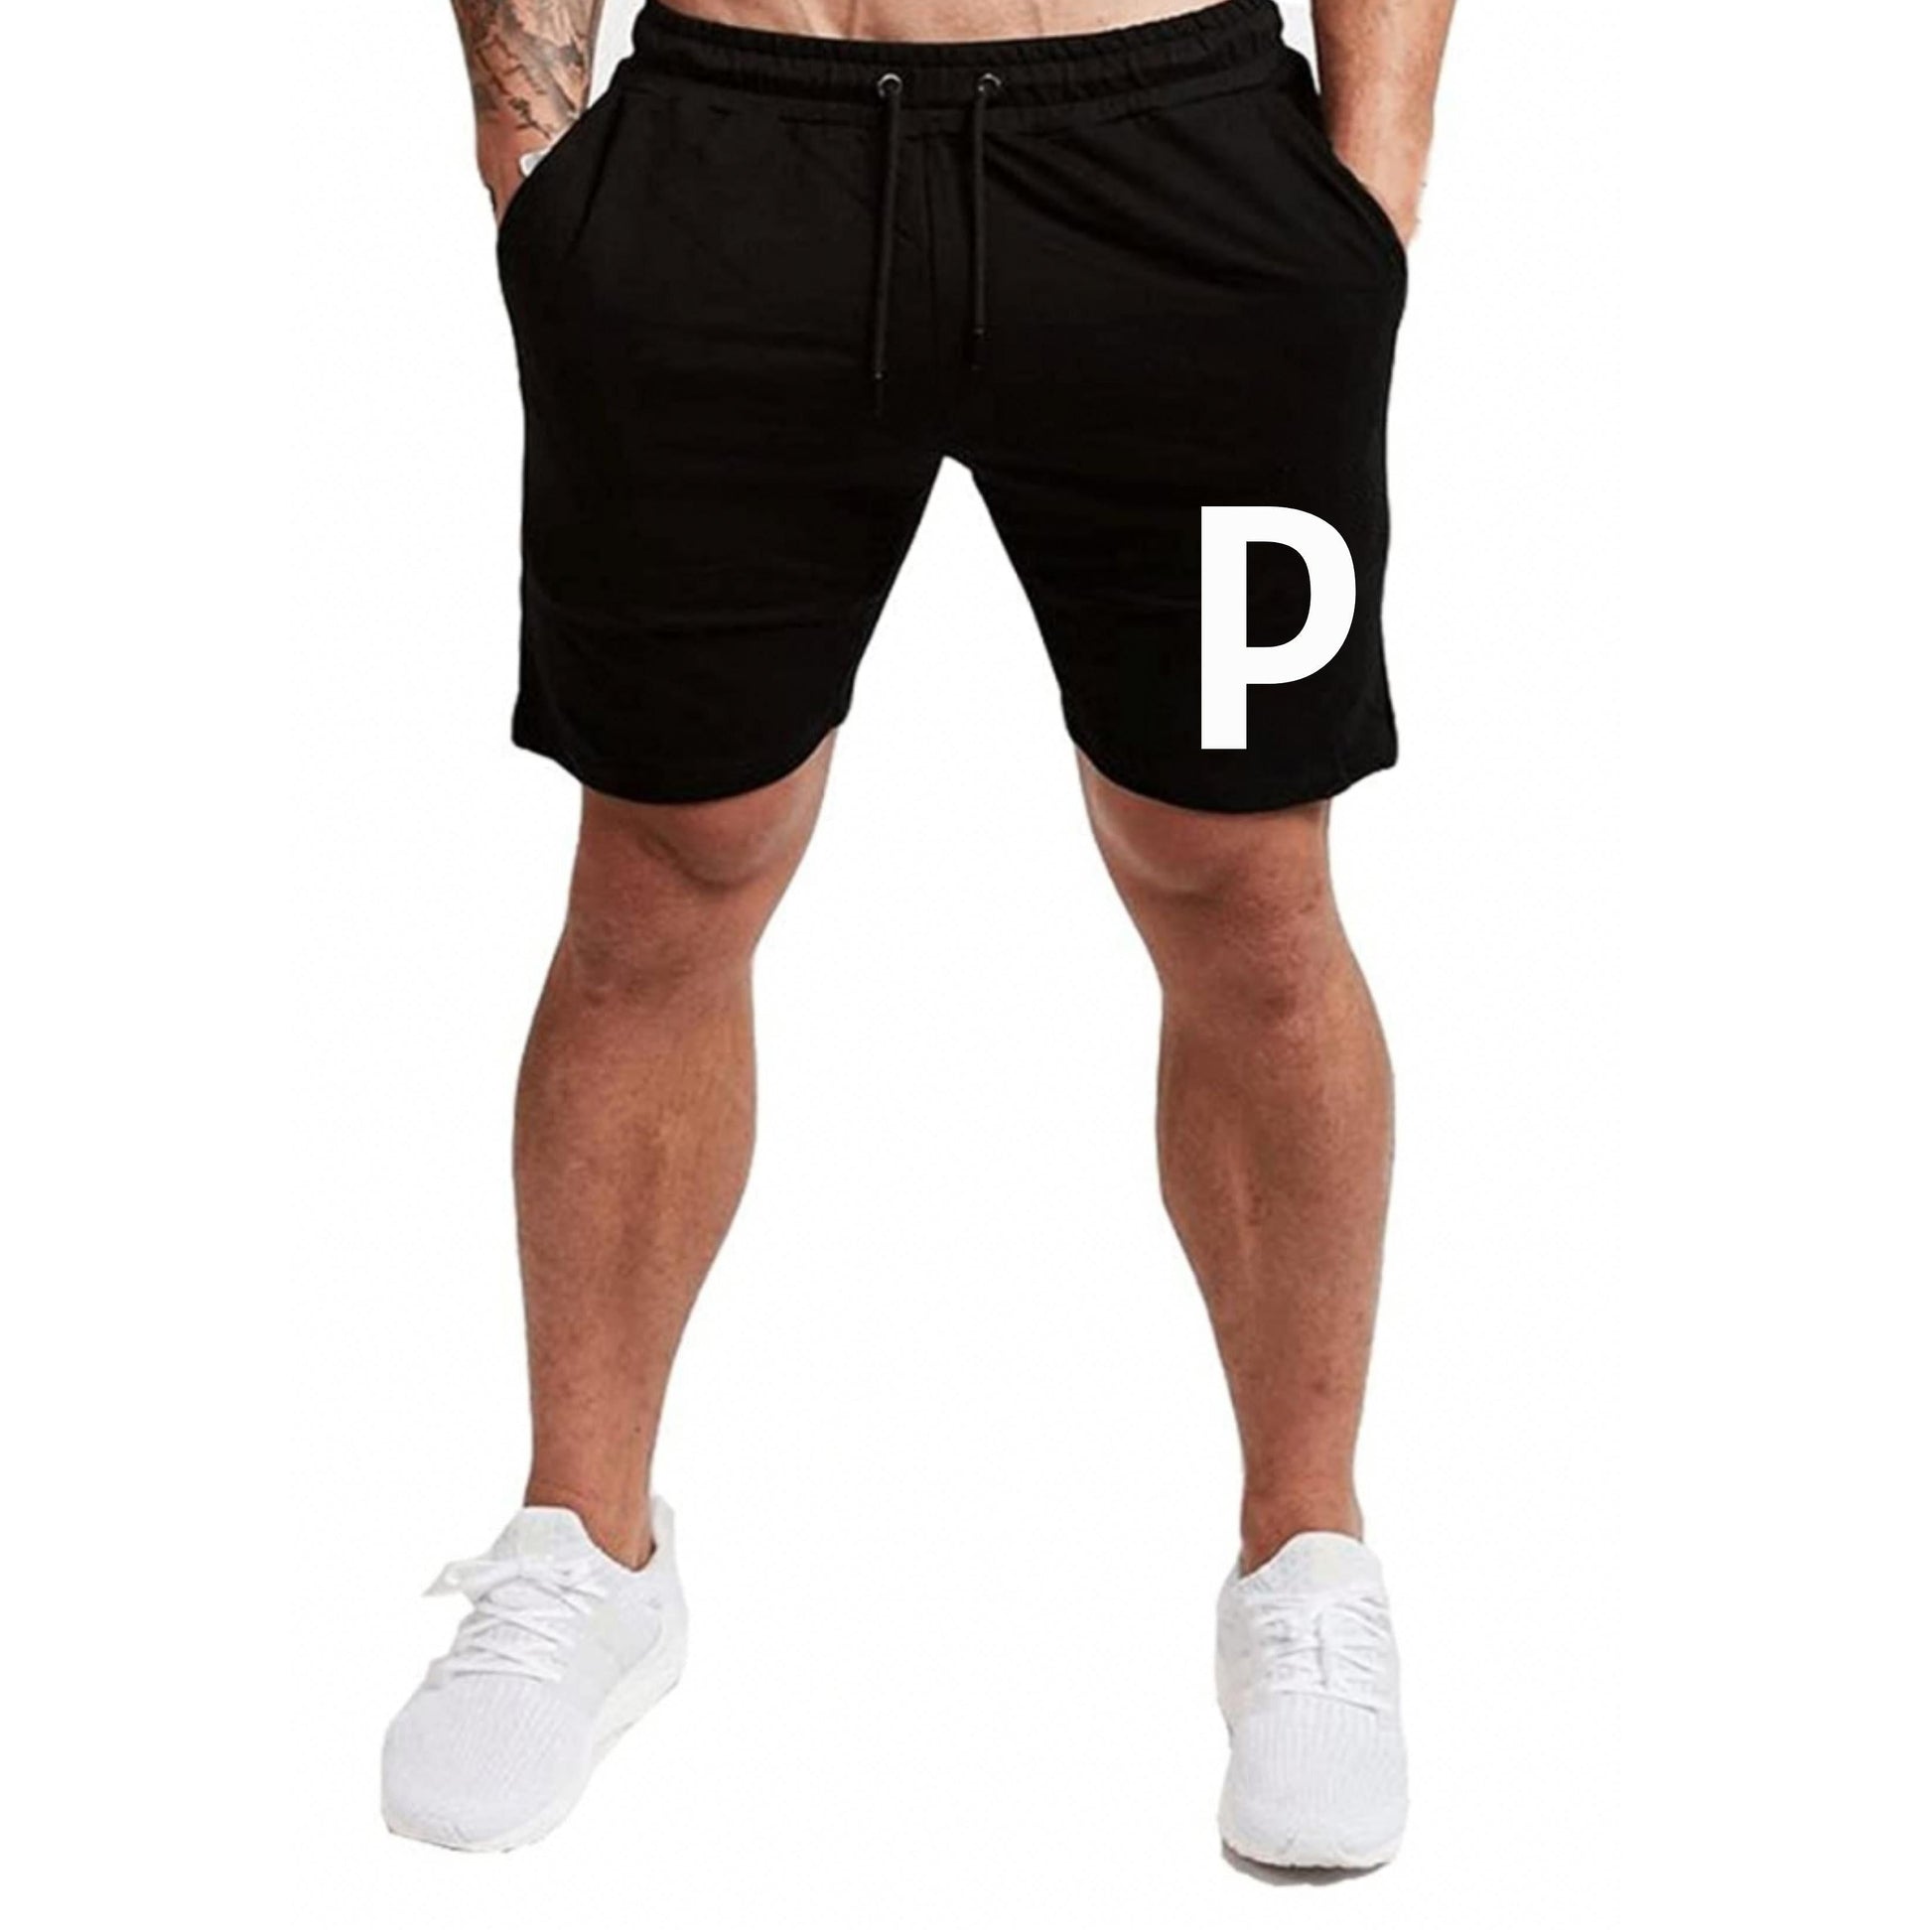 Nutcase Personalized Exercise Shorts Boy Initial Black Nutcase